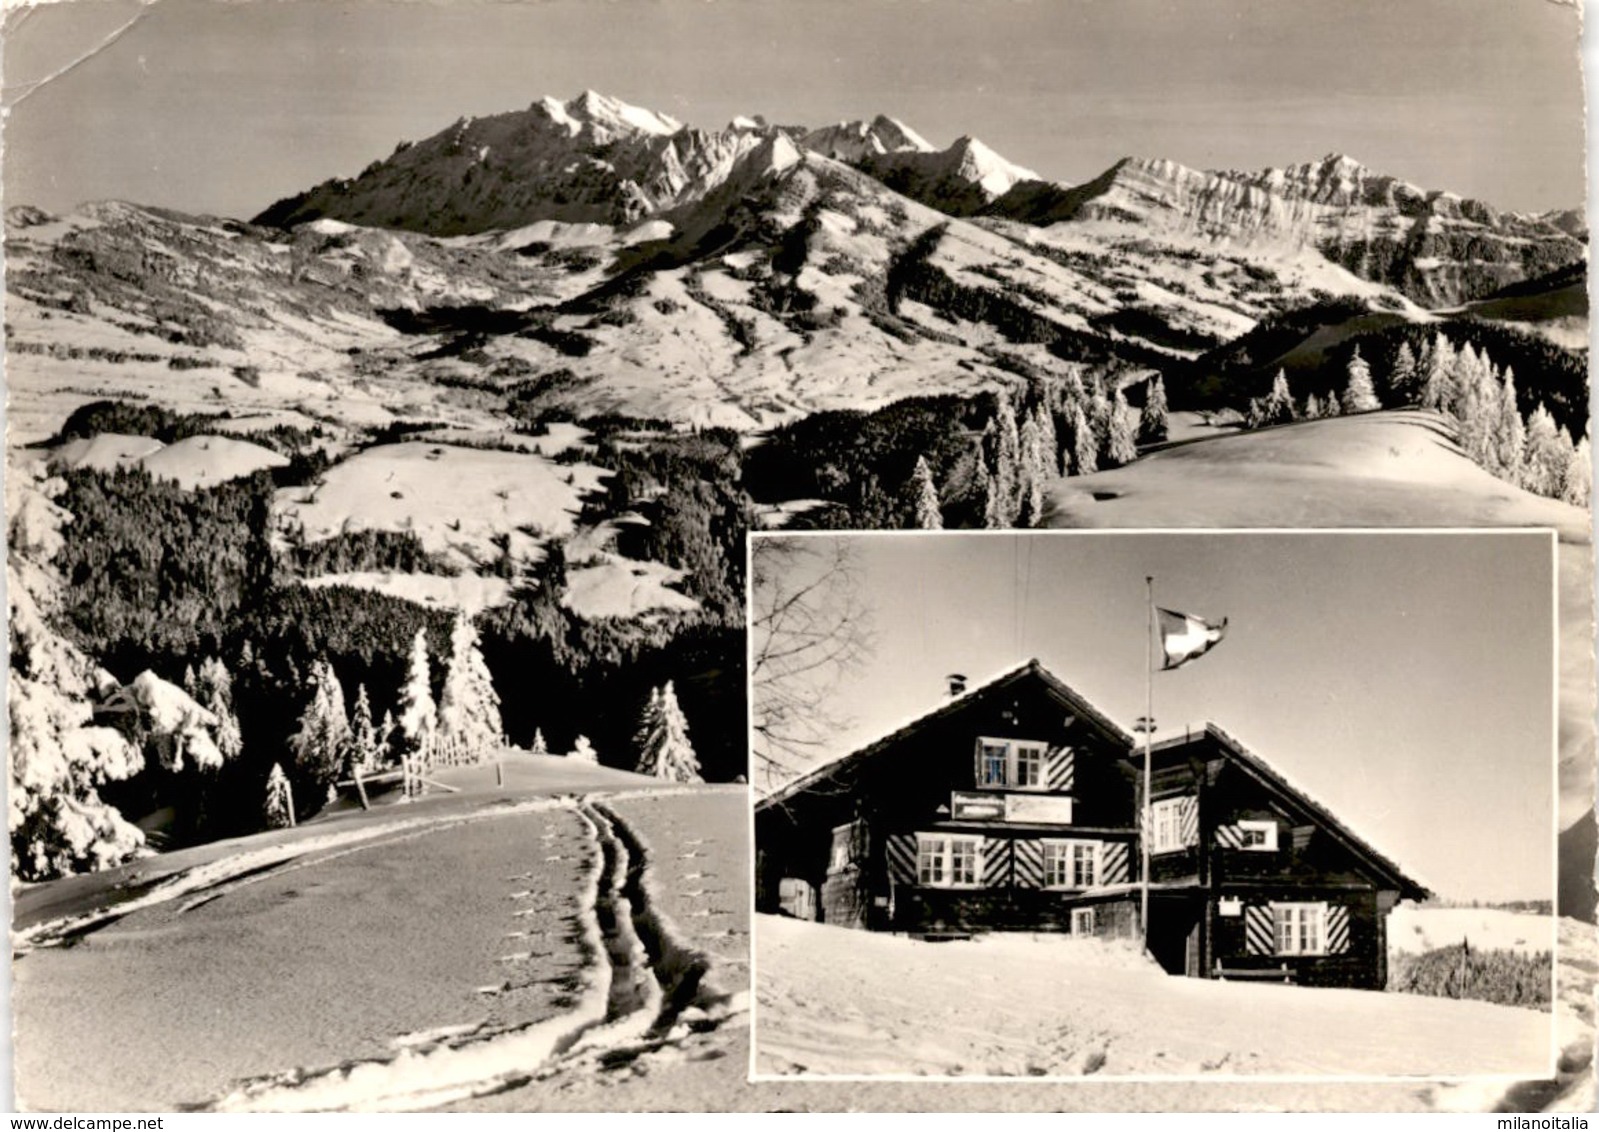 Skihaus Stangen - Skiklub Ebnat-Kappel - 2 Bilder * 20. 1. 1965 - Ebnat-Kappel